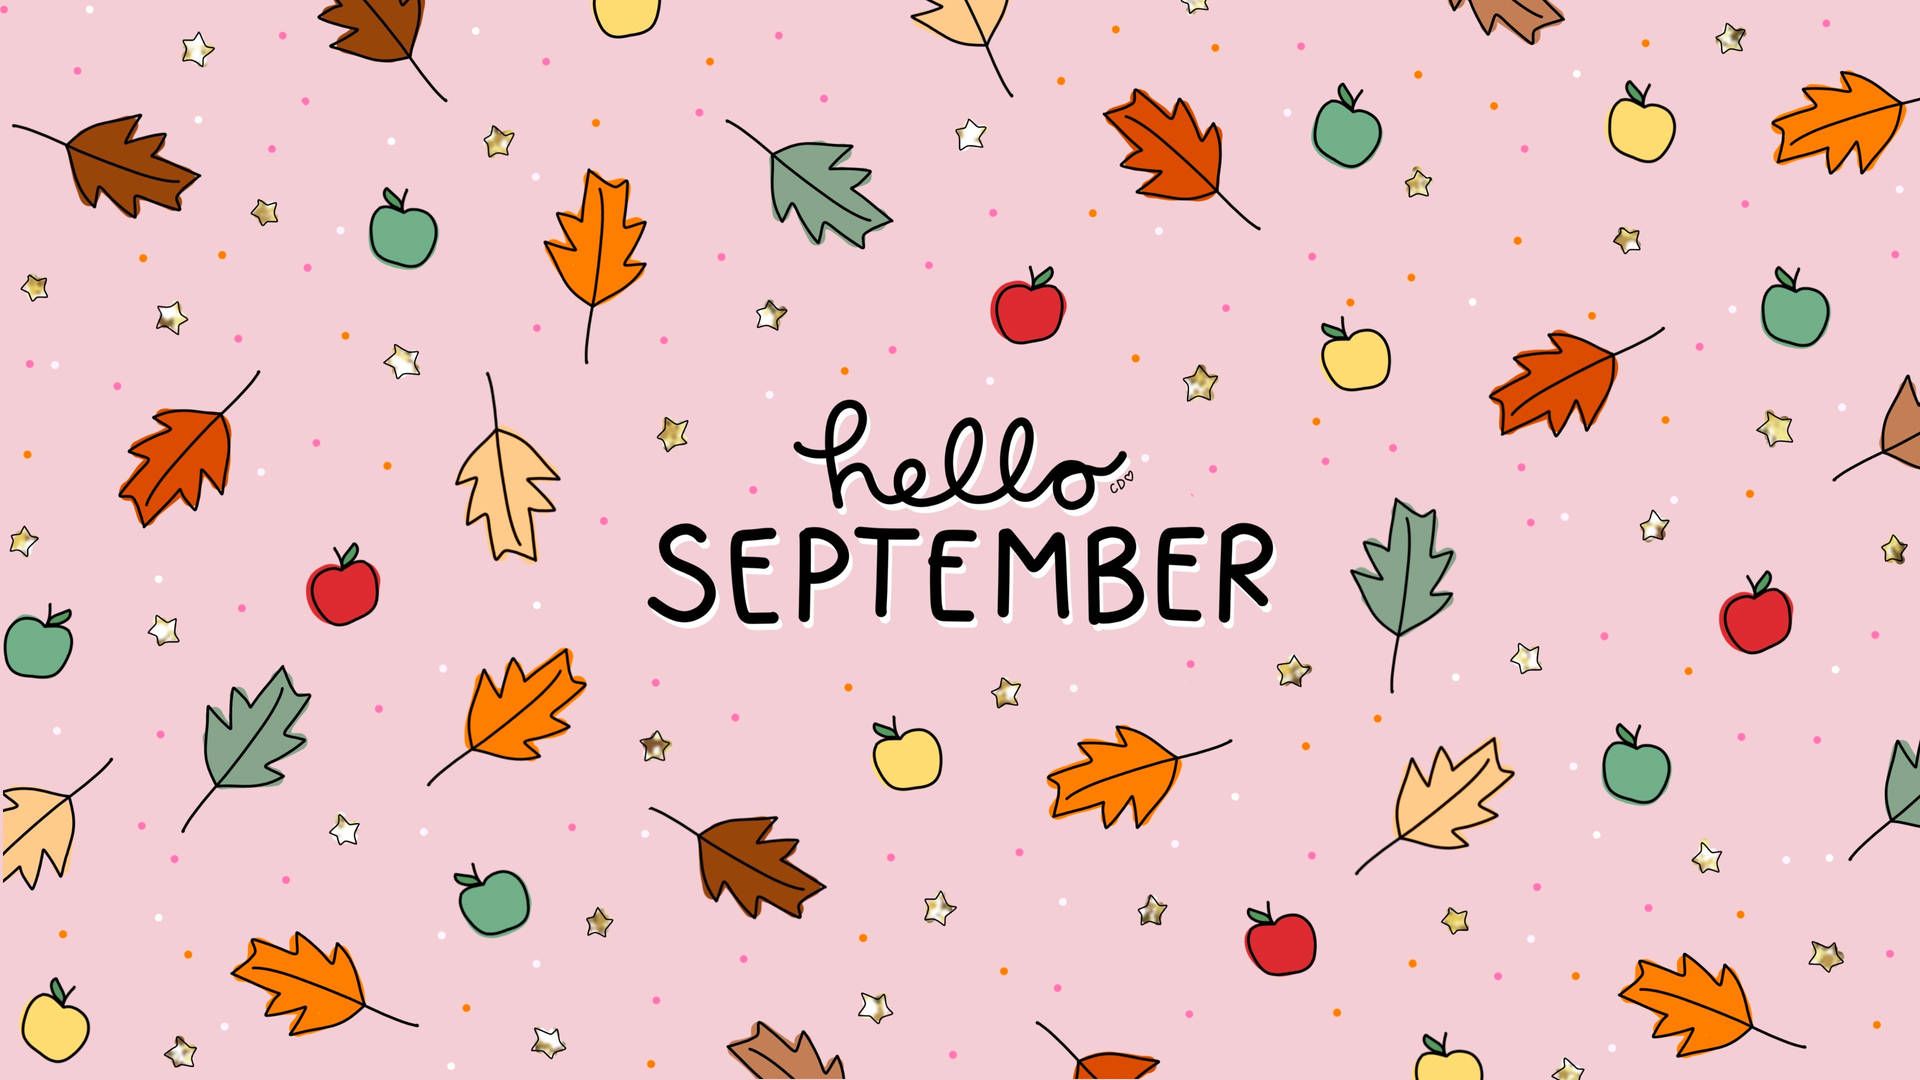 Free September Wallpaper Downloads, September Wallpaper for FREE